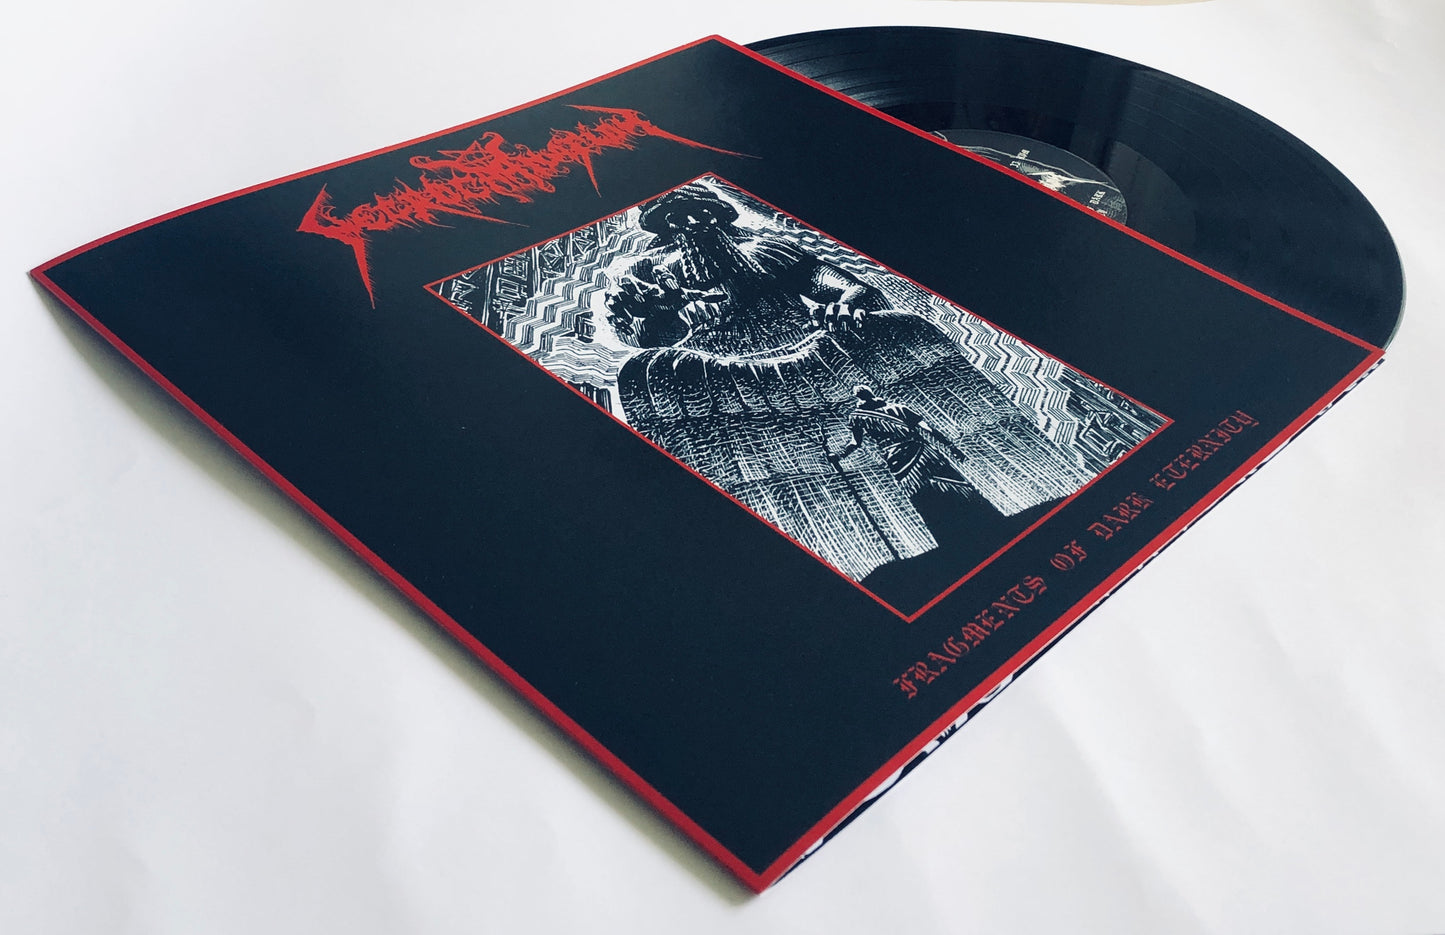 ESCR-LP001: Necrocarnation (INT) "Fragments of Dark Eternity" - 12" LP